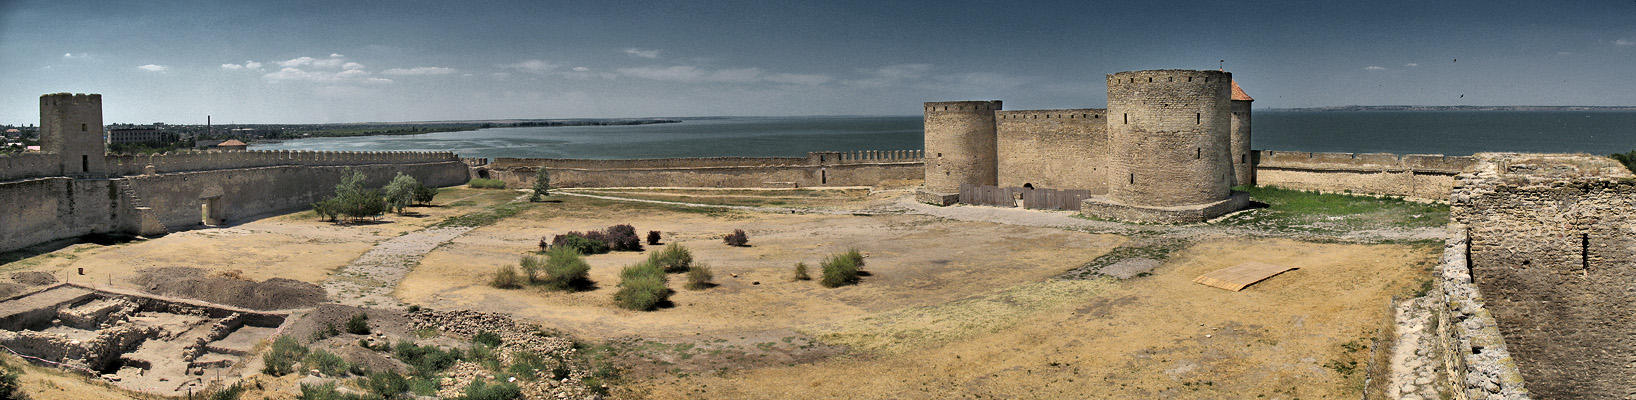 Fortress in Akkerman